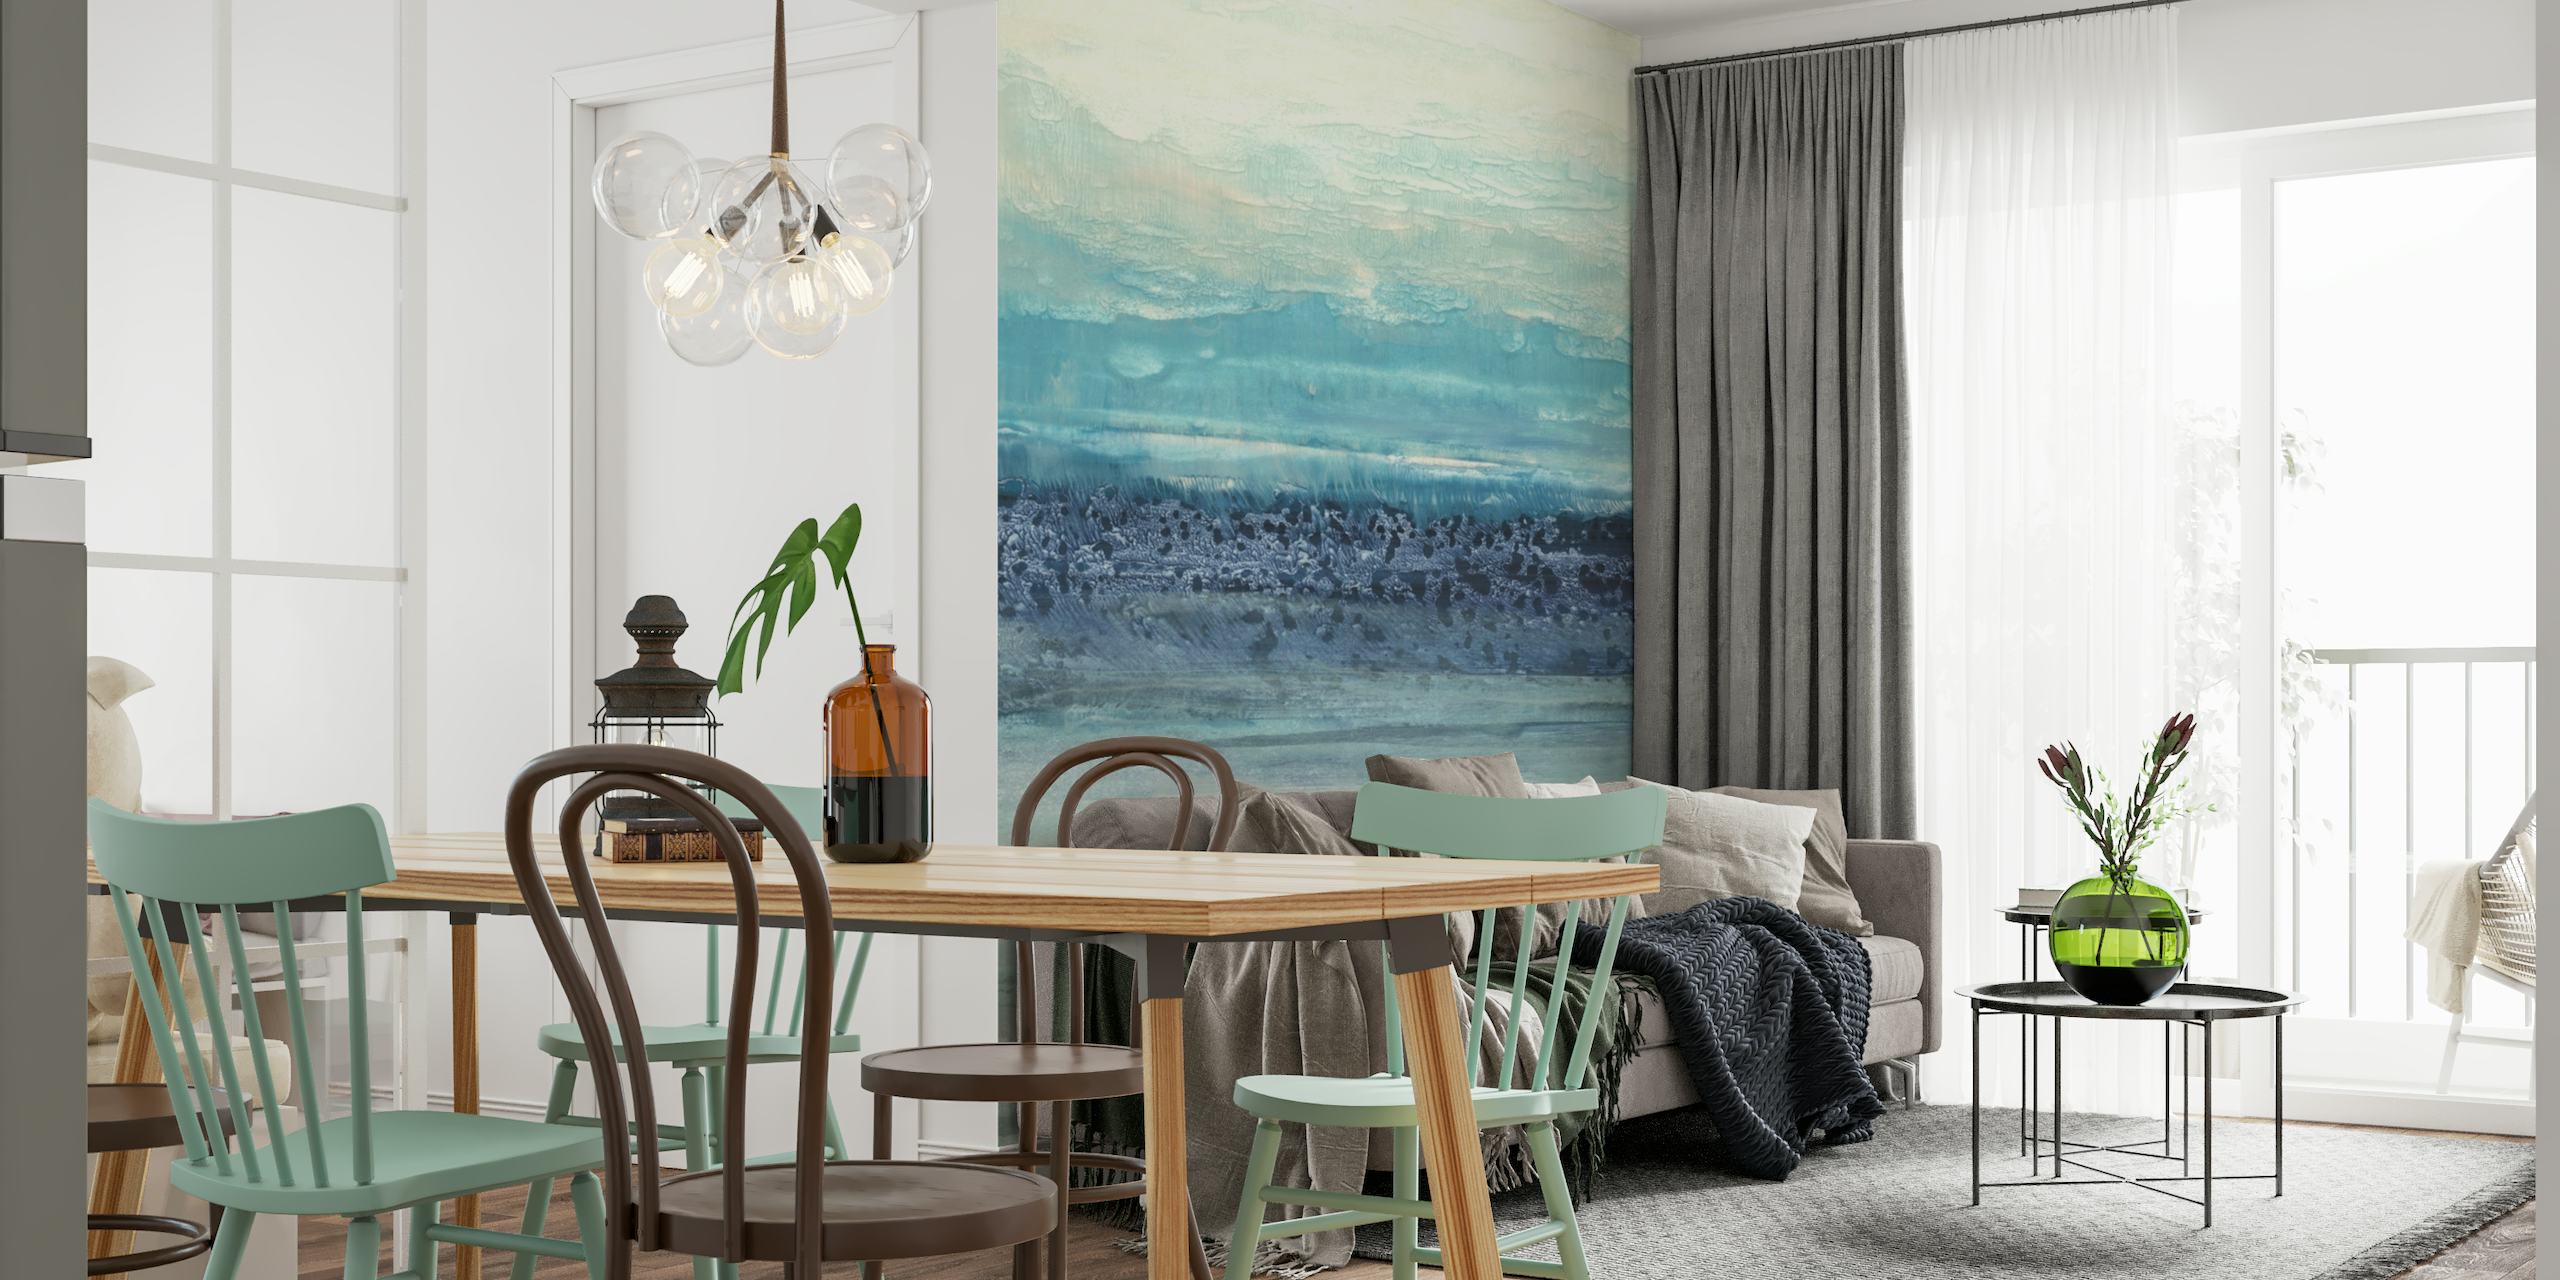 Abstrakti sininen ja harmaa rauhallinen seinämaalaus, joka muistuttaa sumuista valtameren horisonttia.